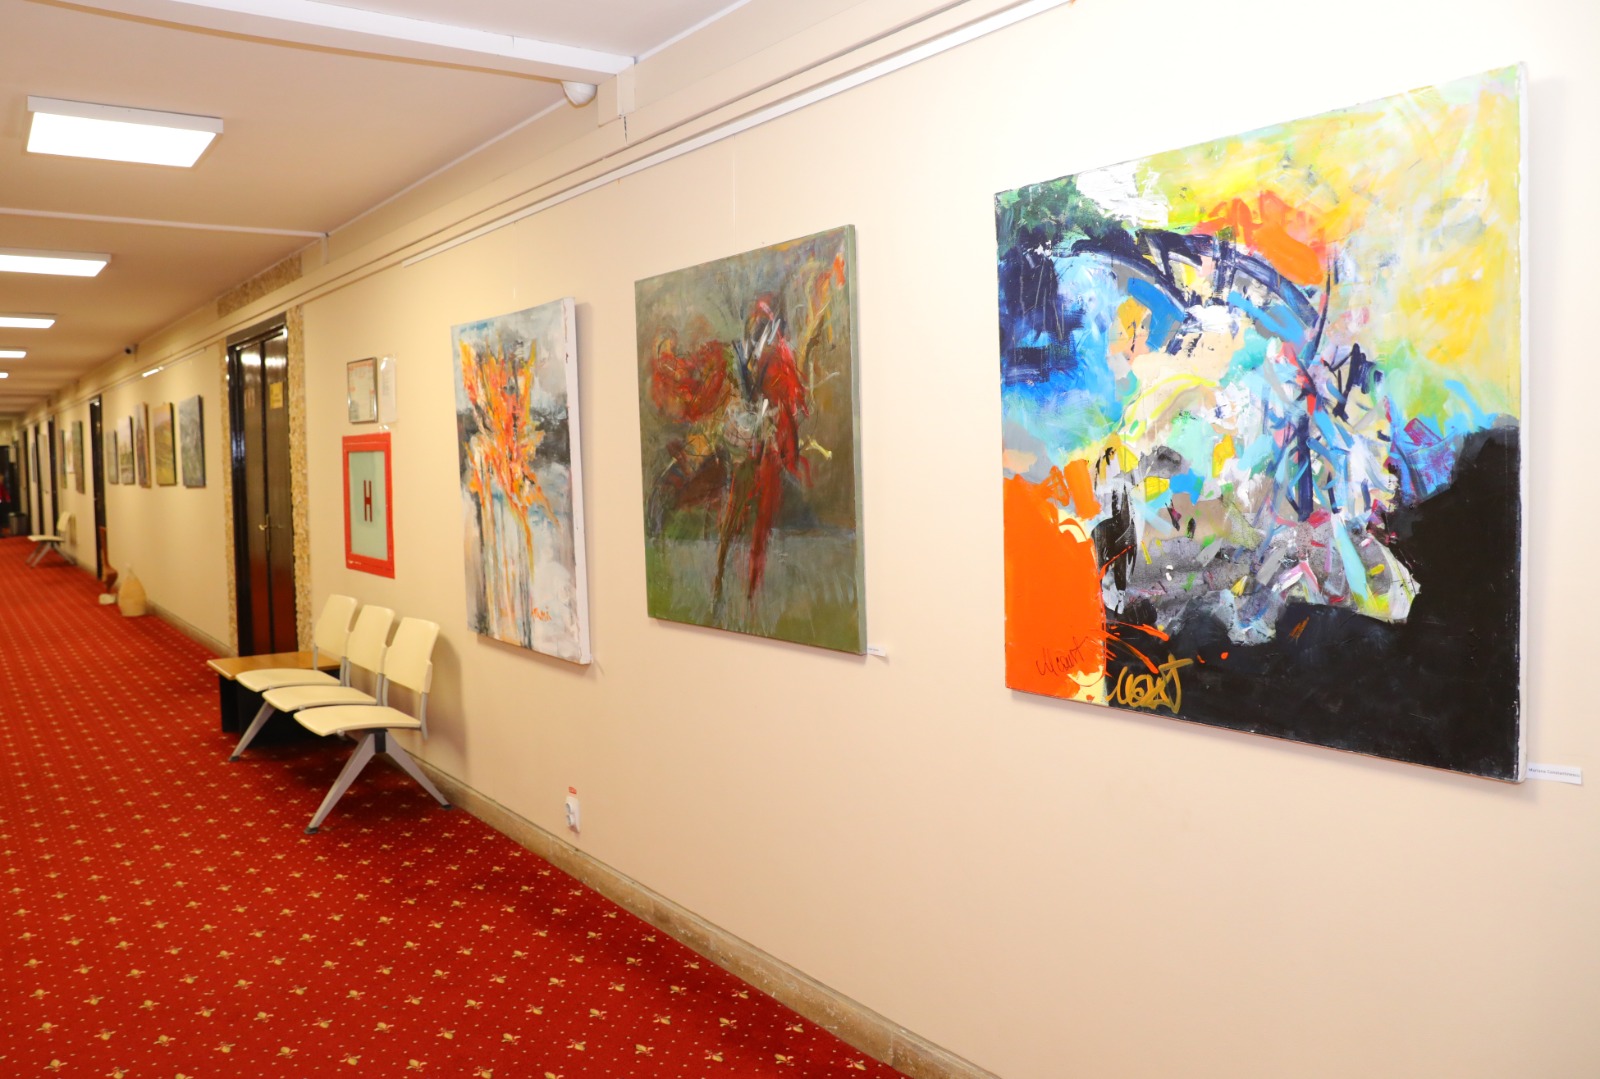 Expoziție de pictură, grafică și tapiserie, aparținând artiștilor constănțeni, pe holurile Primăriei Constanța - 40609541373823274501434279314538-1701264096.jpg